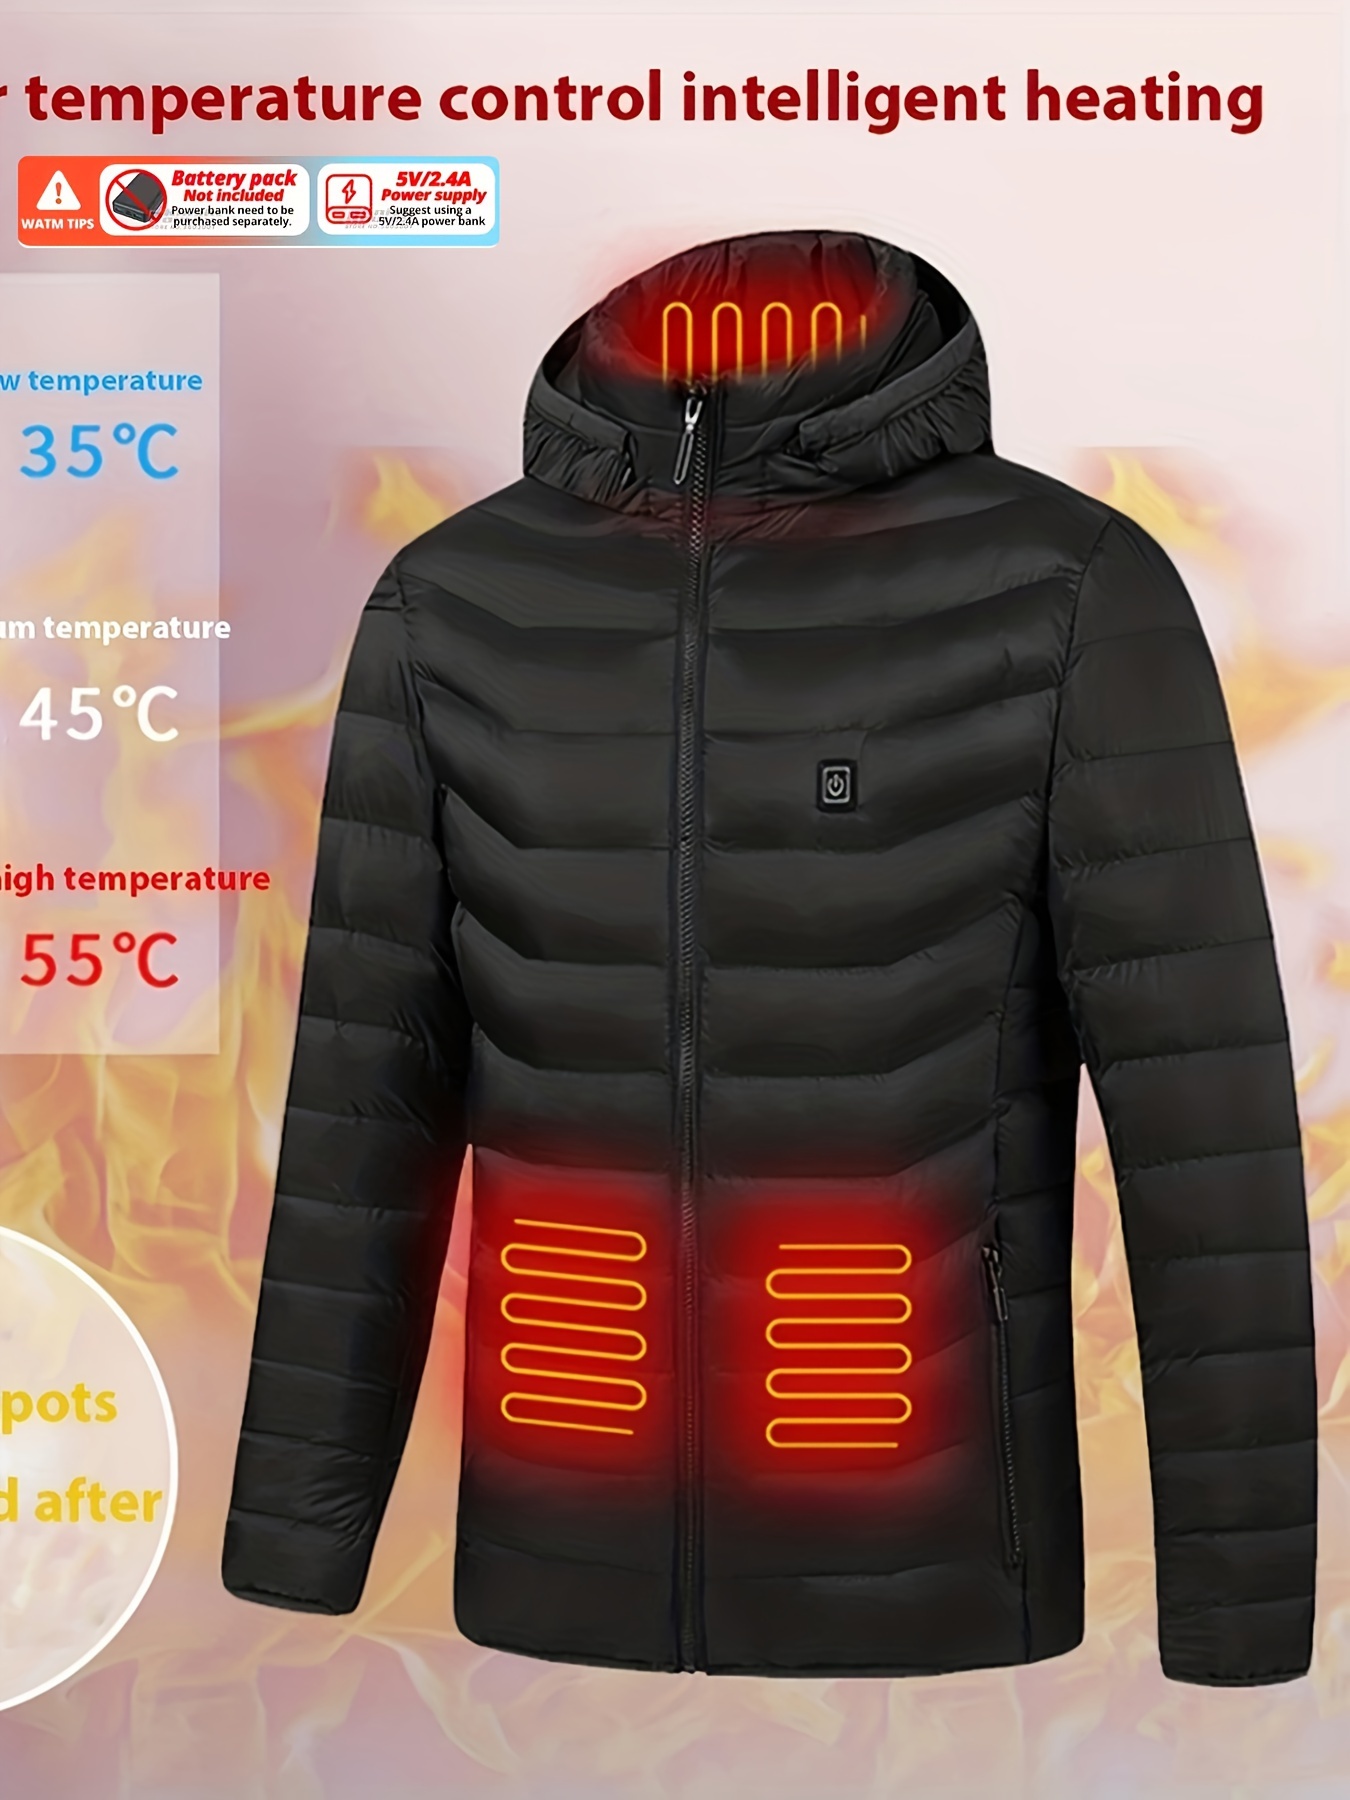 Chaleco térmico para hombres y mujeres, chaqueta térmica de diseño  deportivo recargable, calentador eléctrico inteligente, batería no incluida